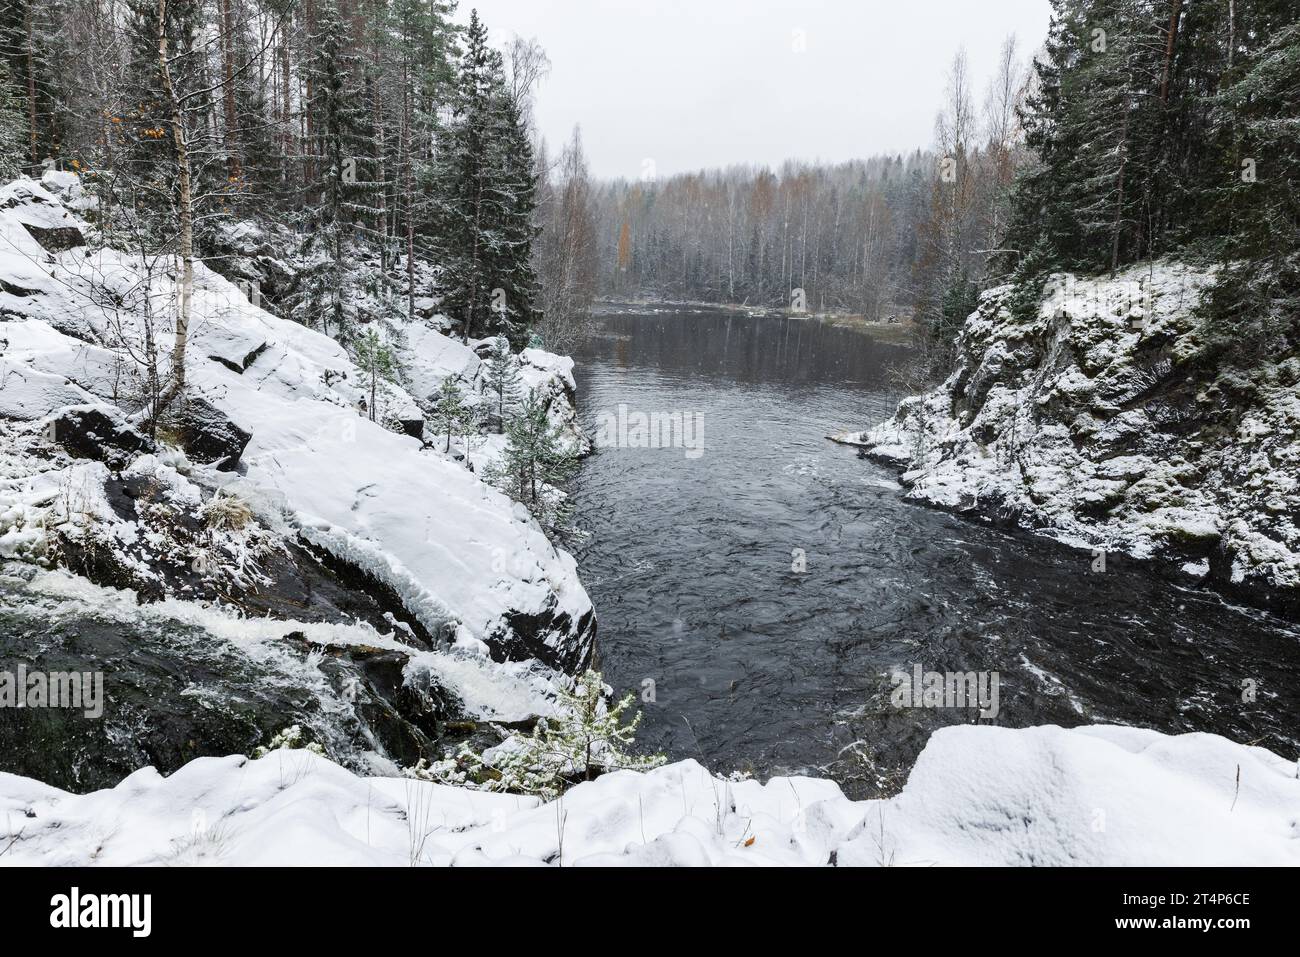 Photo de paysage de la rivière SUNA prise par une journée nuageuse froide d'hiver. Réserve naturelle de Kivach, district de Kondopoga, République de Carélie, Russie Banque D'Images